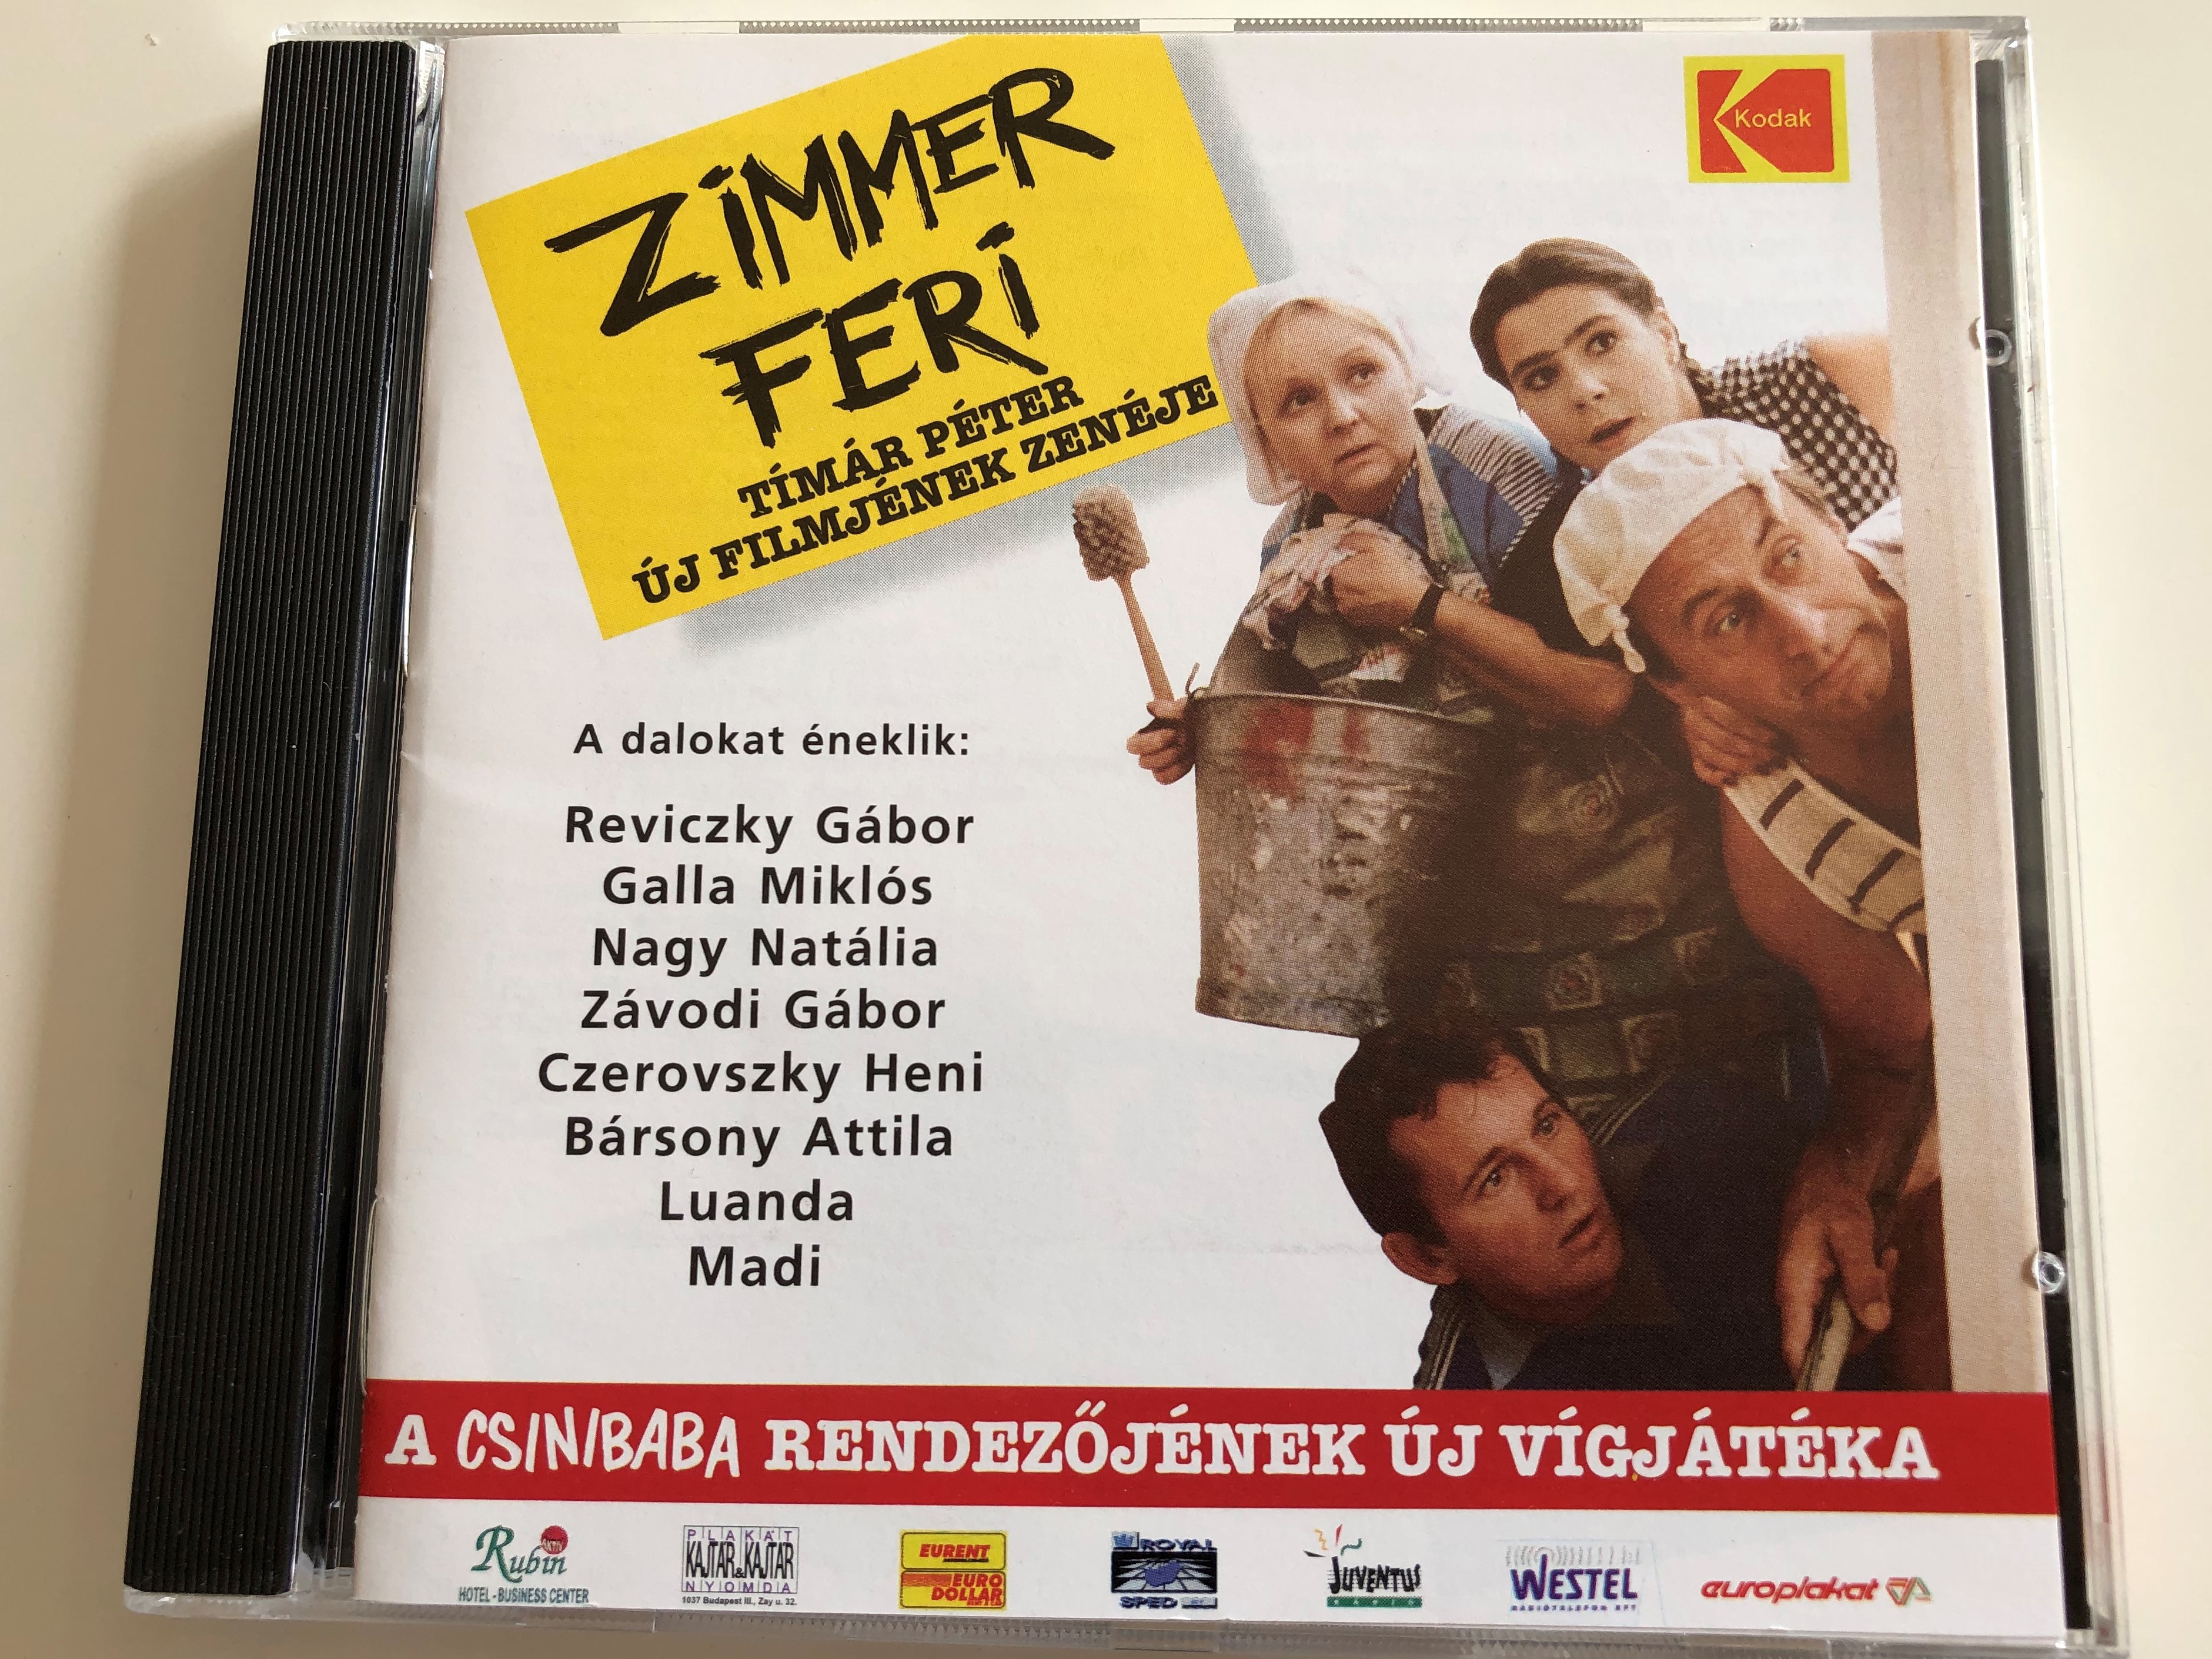 zimmer-feri-tim-r-p-ter-j-filmj-nek-zen-je-reviczky-g-bor-galla-mikl-s-nagy-nat-lia-z-vodi-g-bor-czerovszky-heni-b-rsony-attila-luanda-madi-audio-cd-1998-1-.jpg